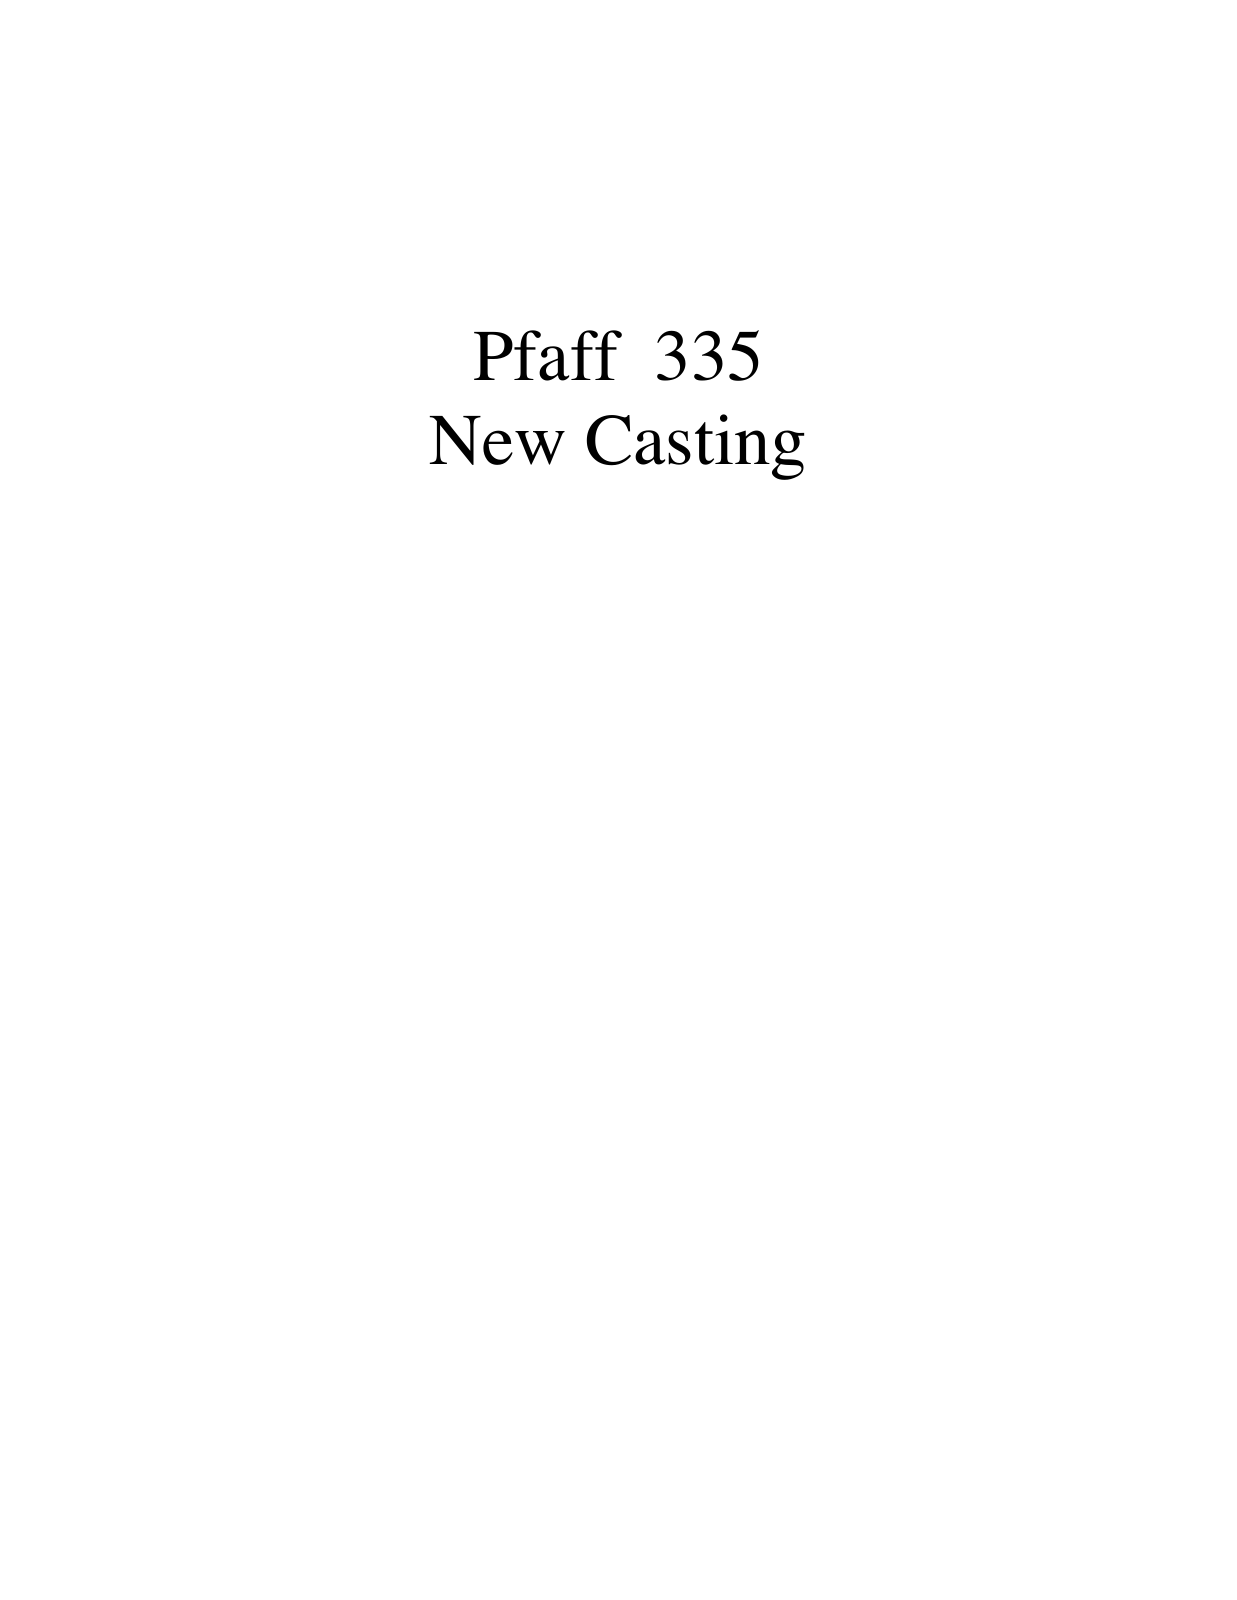 PFAFF 335 New Casting Parts List